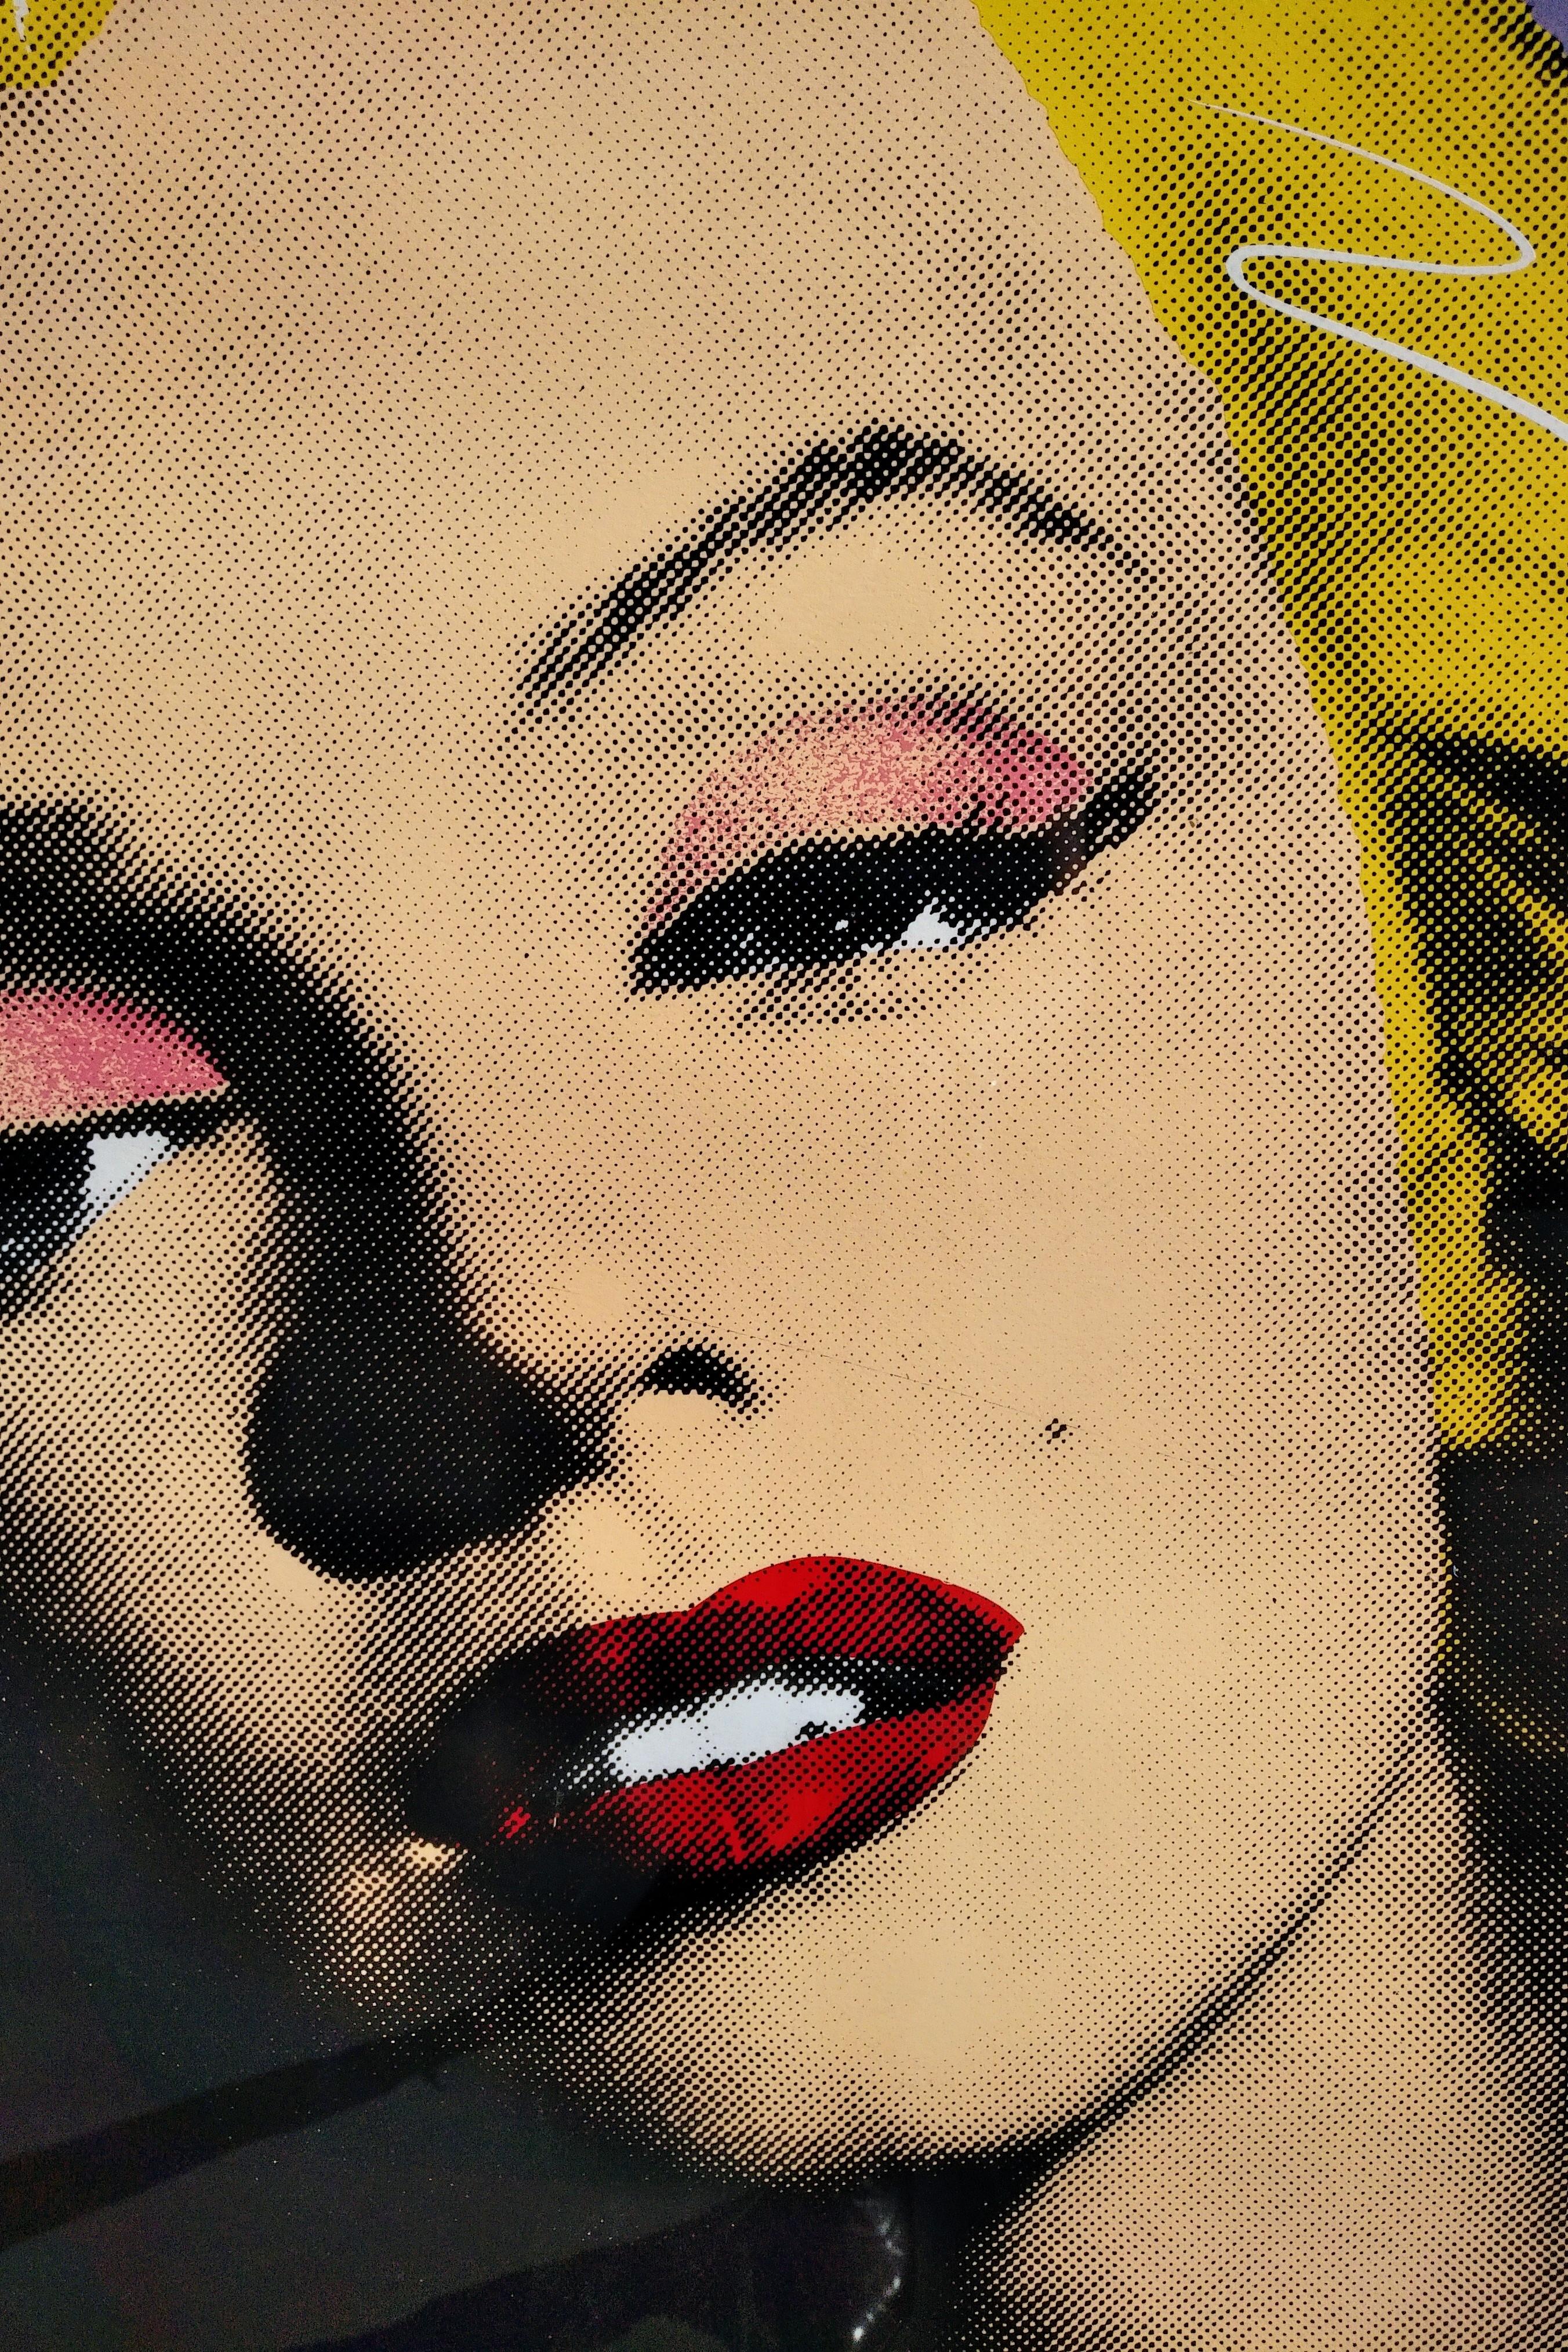 Marilyn Monroe Pop Art Portrait by Richard Duardo  1